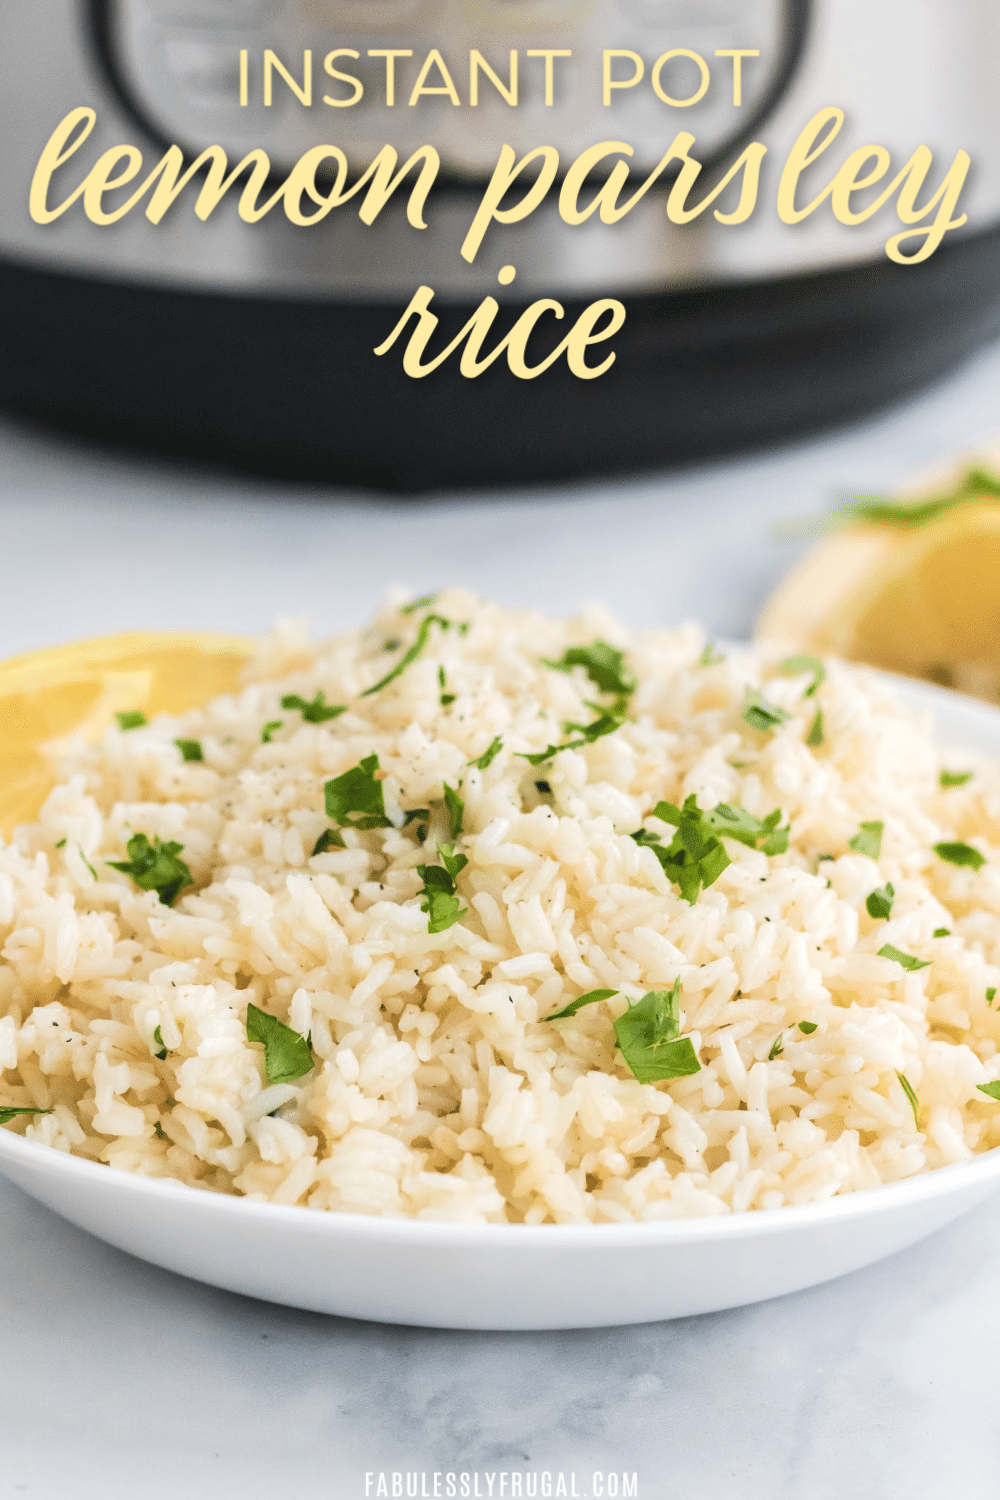 Instant pot lemon parsley rice